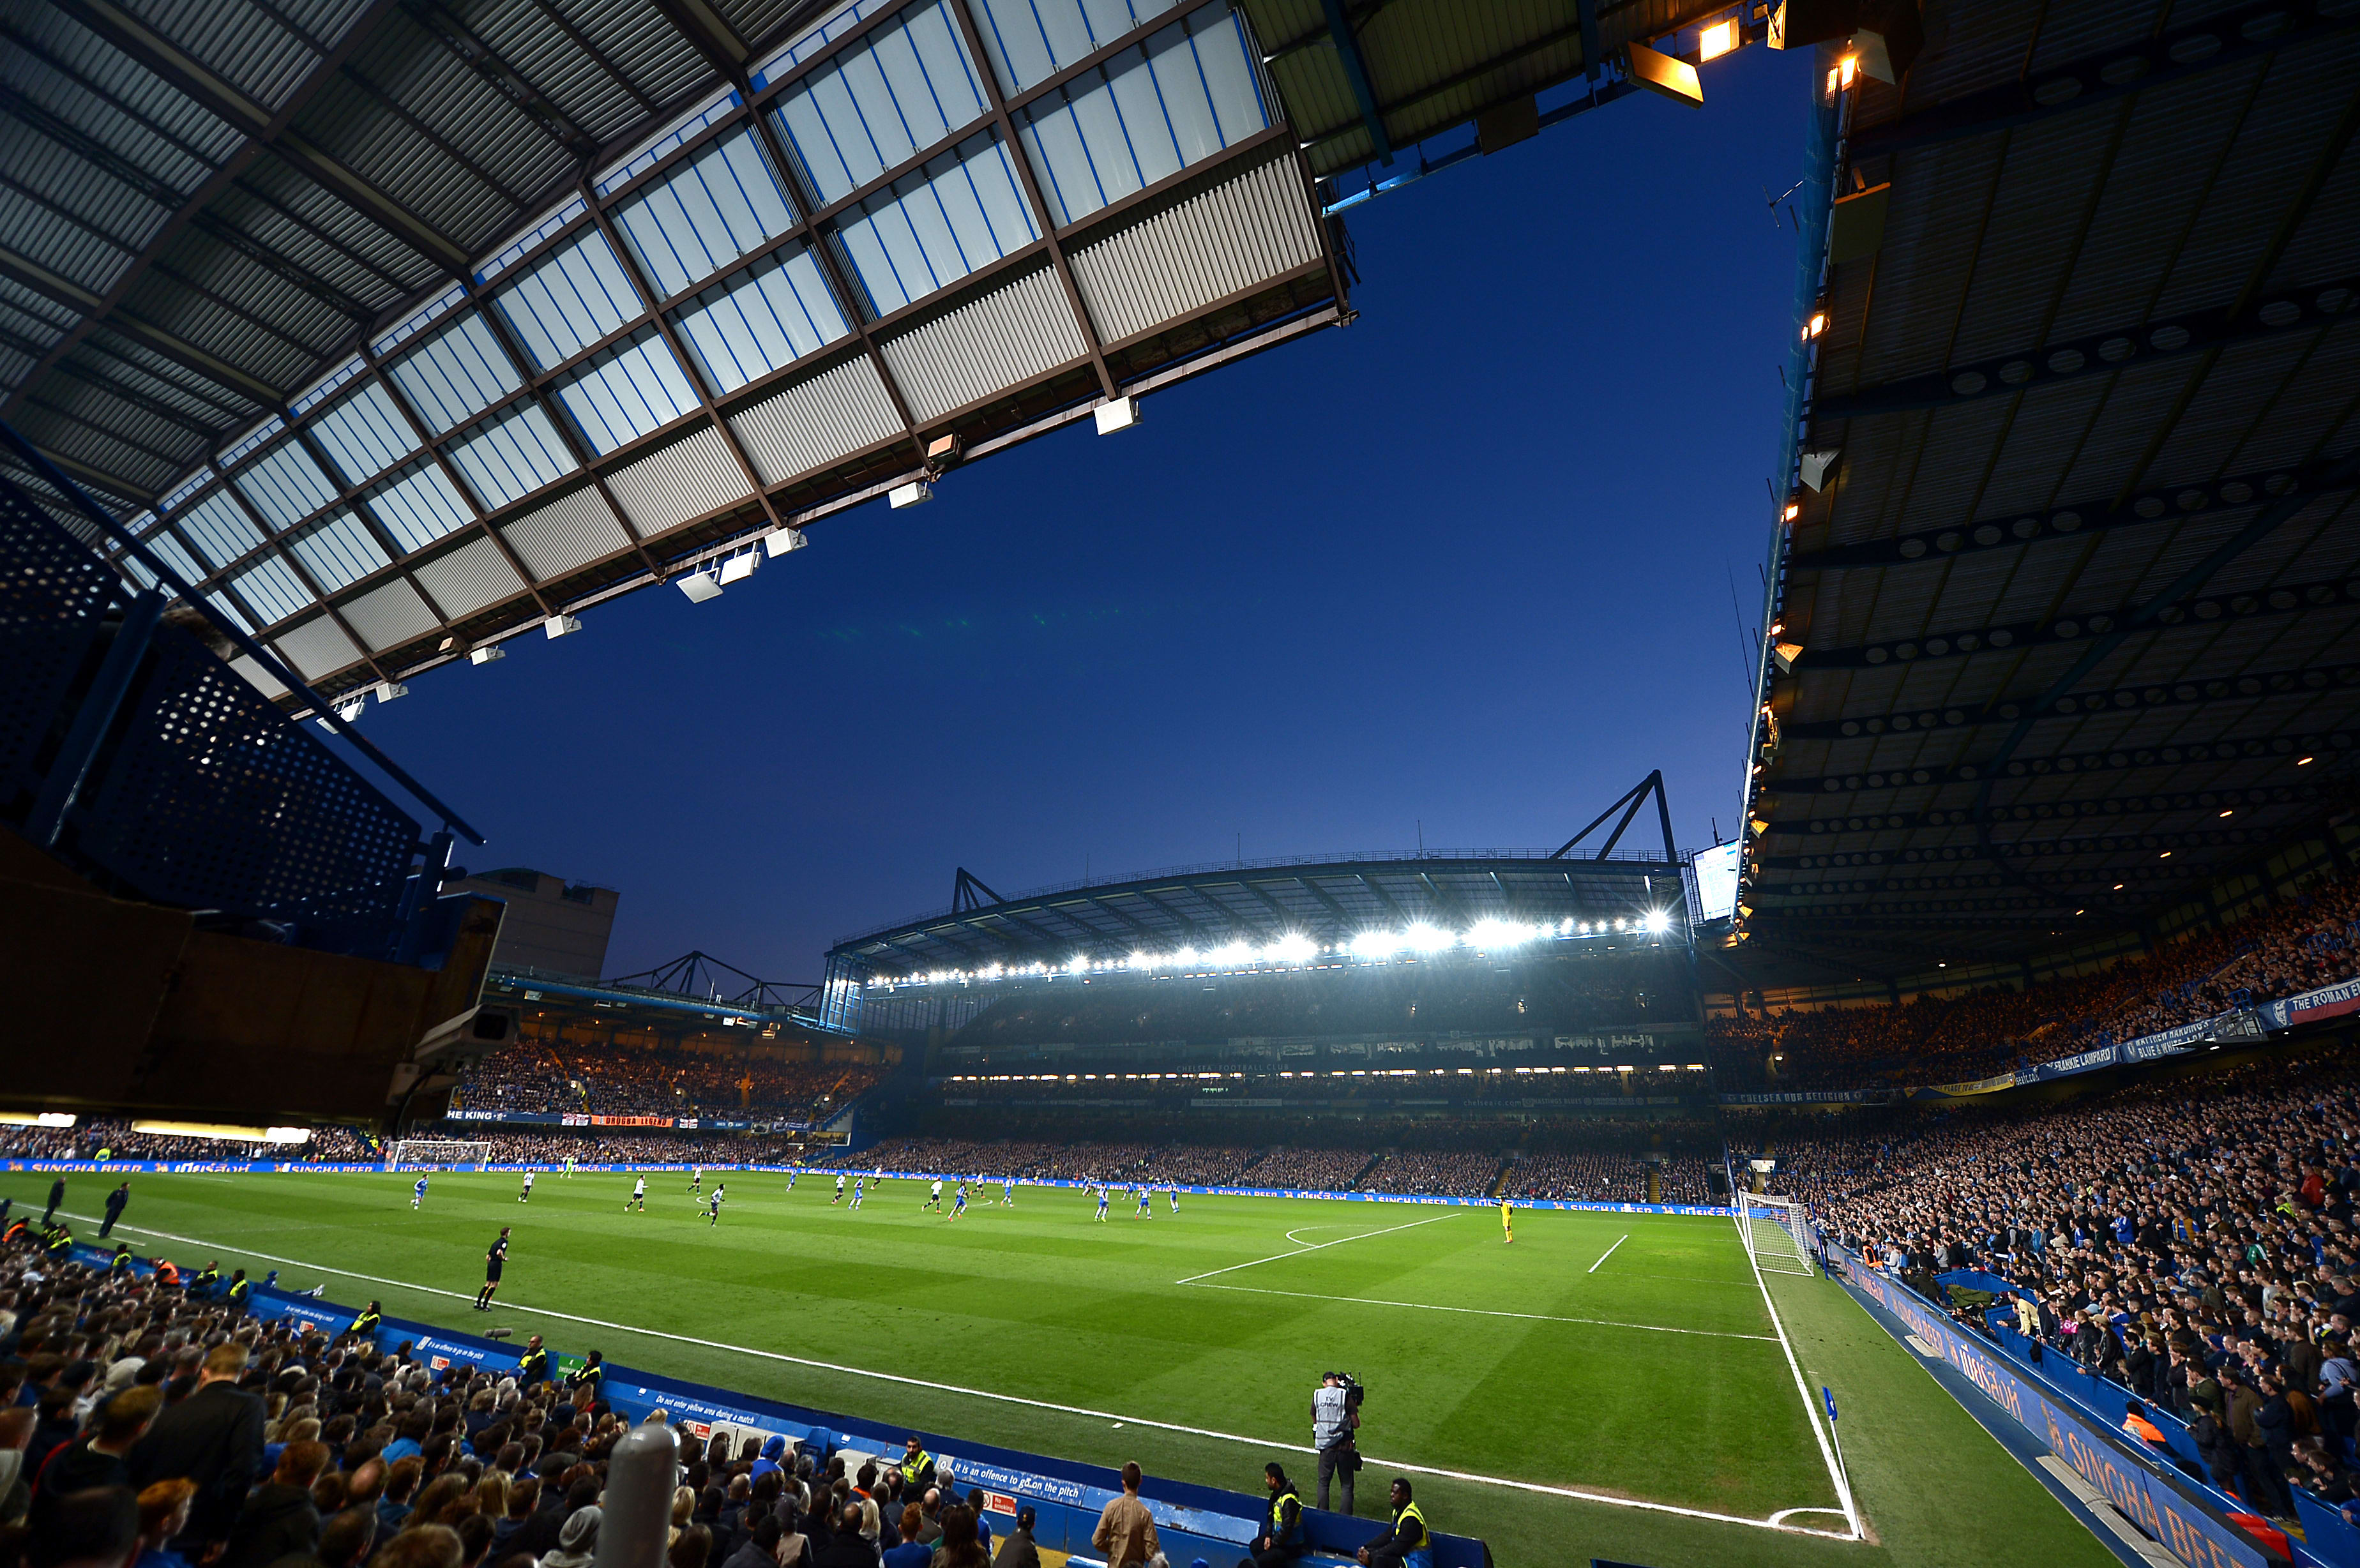 Chelsea FC Stadium Tour: FAQs